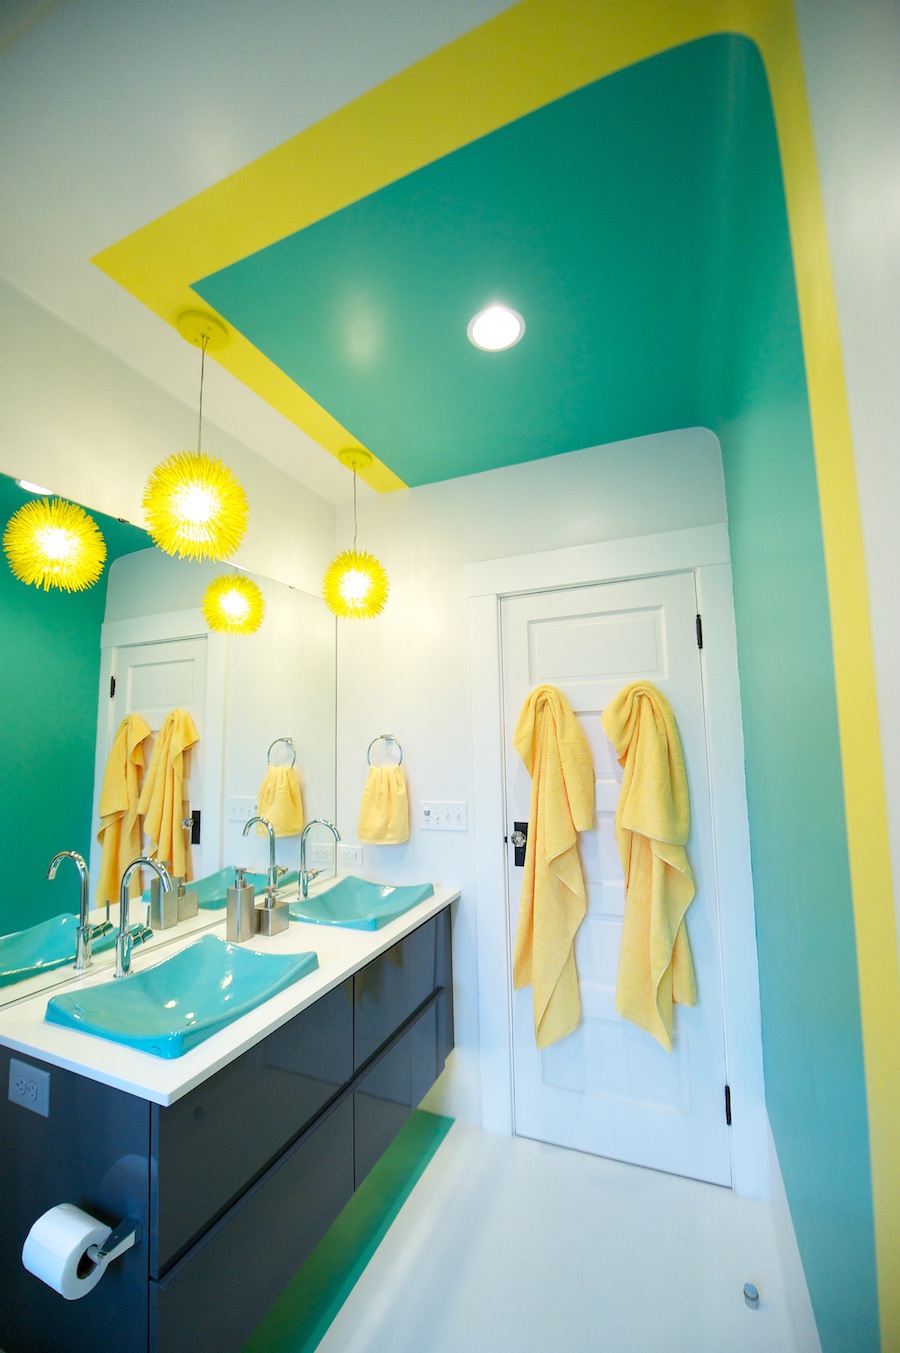 Κίτρινο-πράσινο τόνους στο μπάνιο